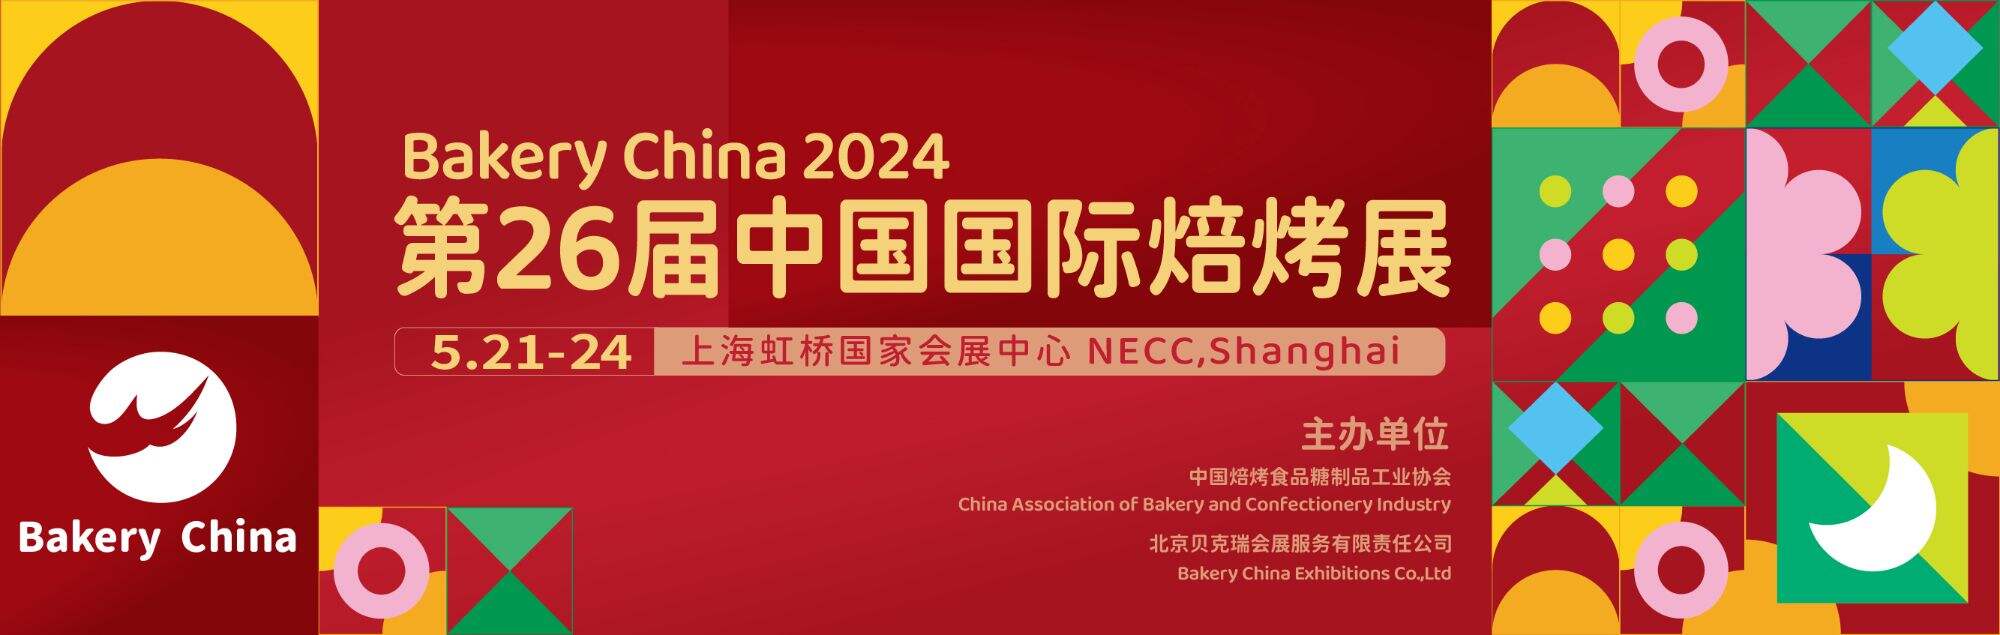 Xem trước triển lãm:Bakery China 2024 ngày 21-24 tháng XNUMX tại Thượng Hải